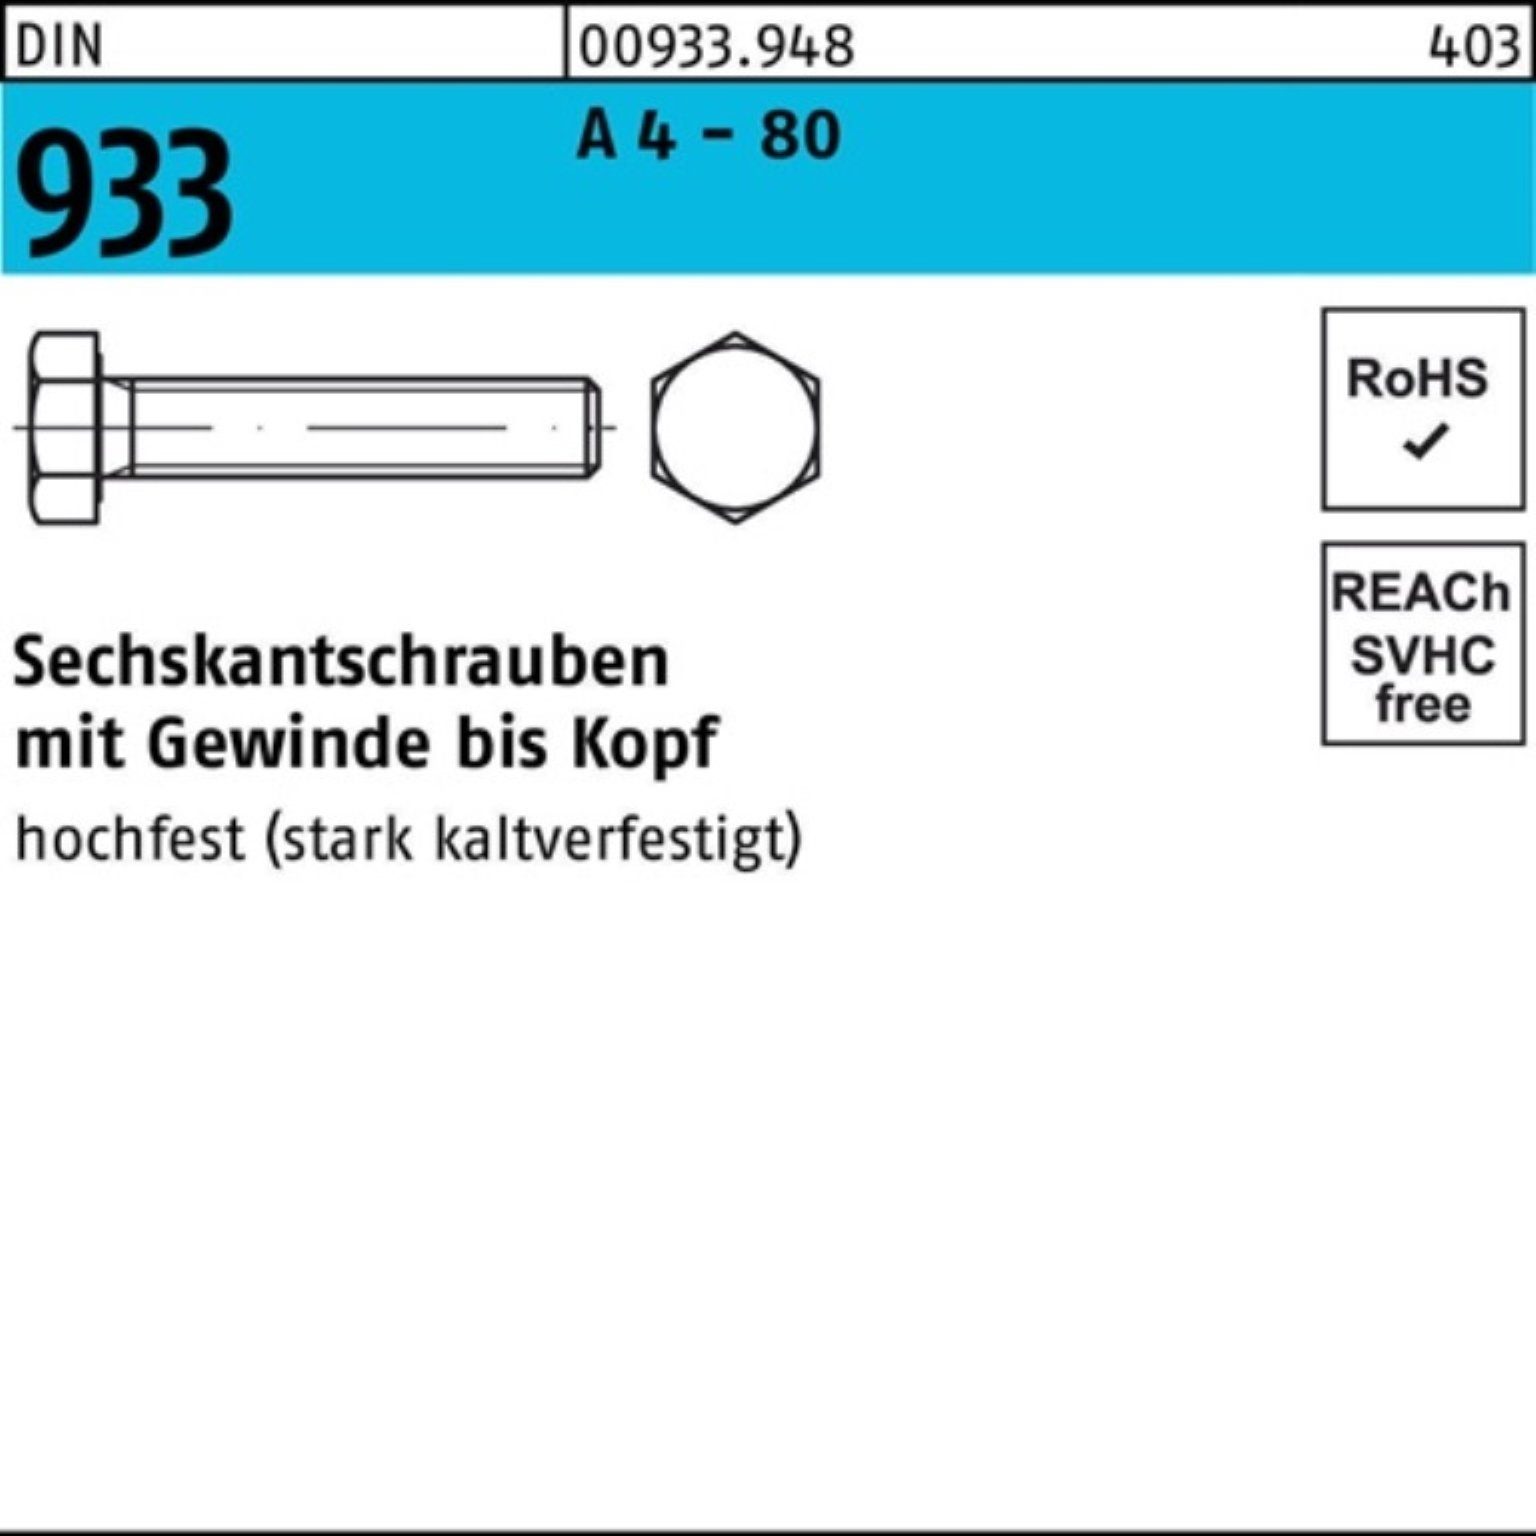 Reyher Sechskantschraube 100er Pack Sechskantschraube DIN 933 VG M16x 150 A 4 - 80 1 Stück DIN